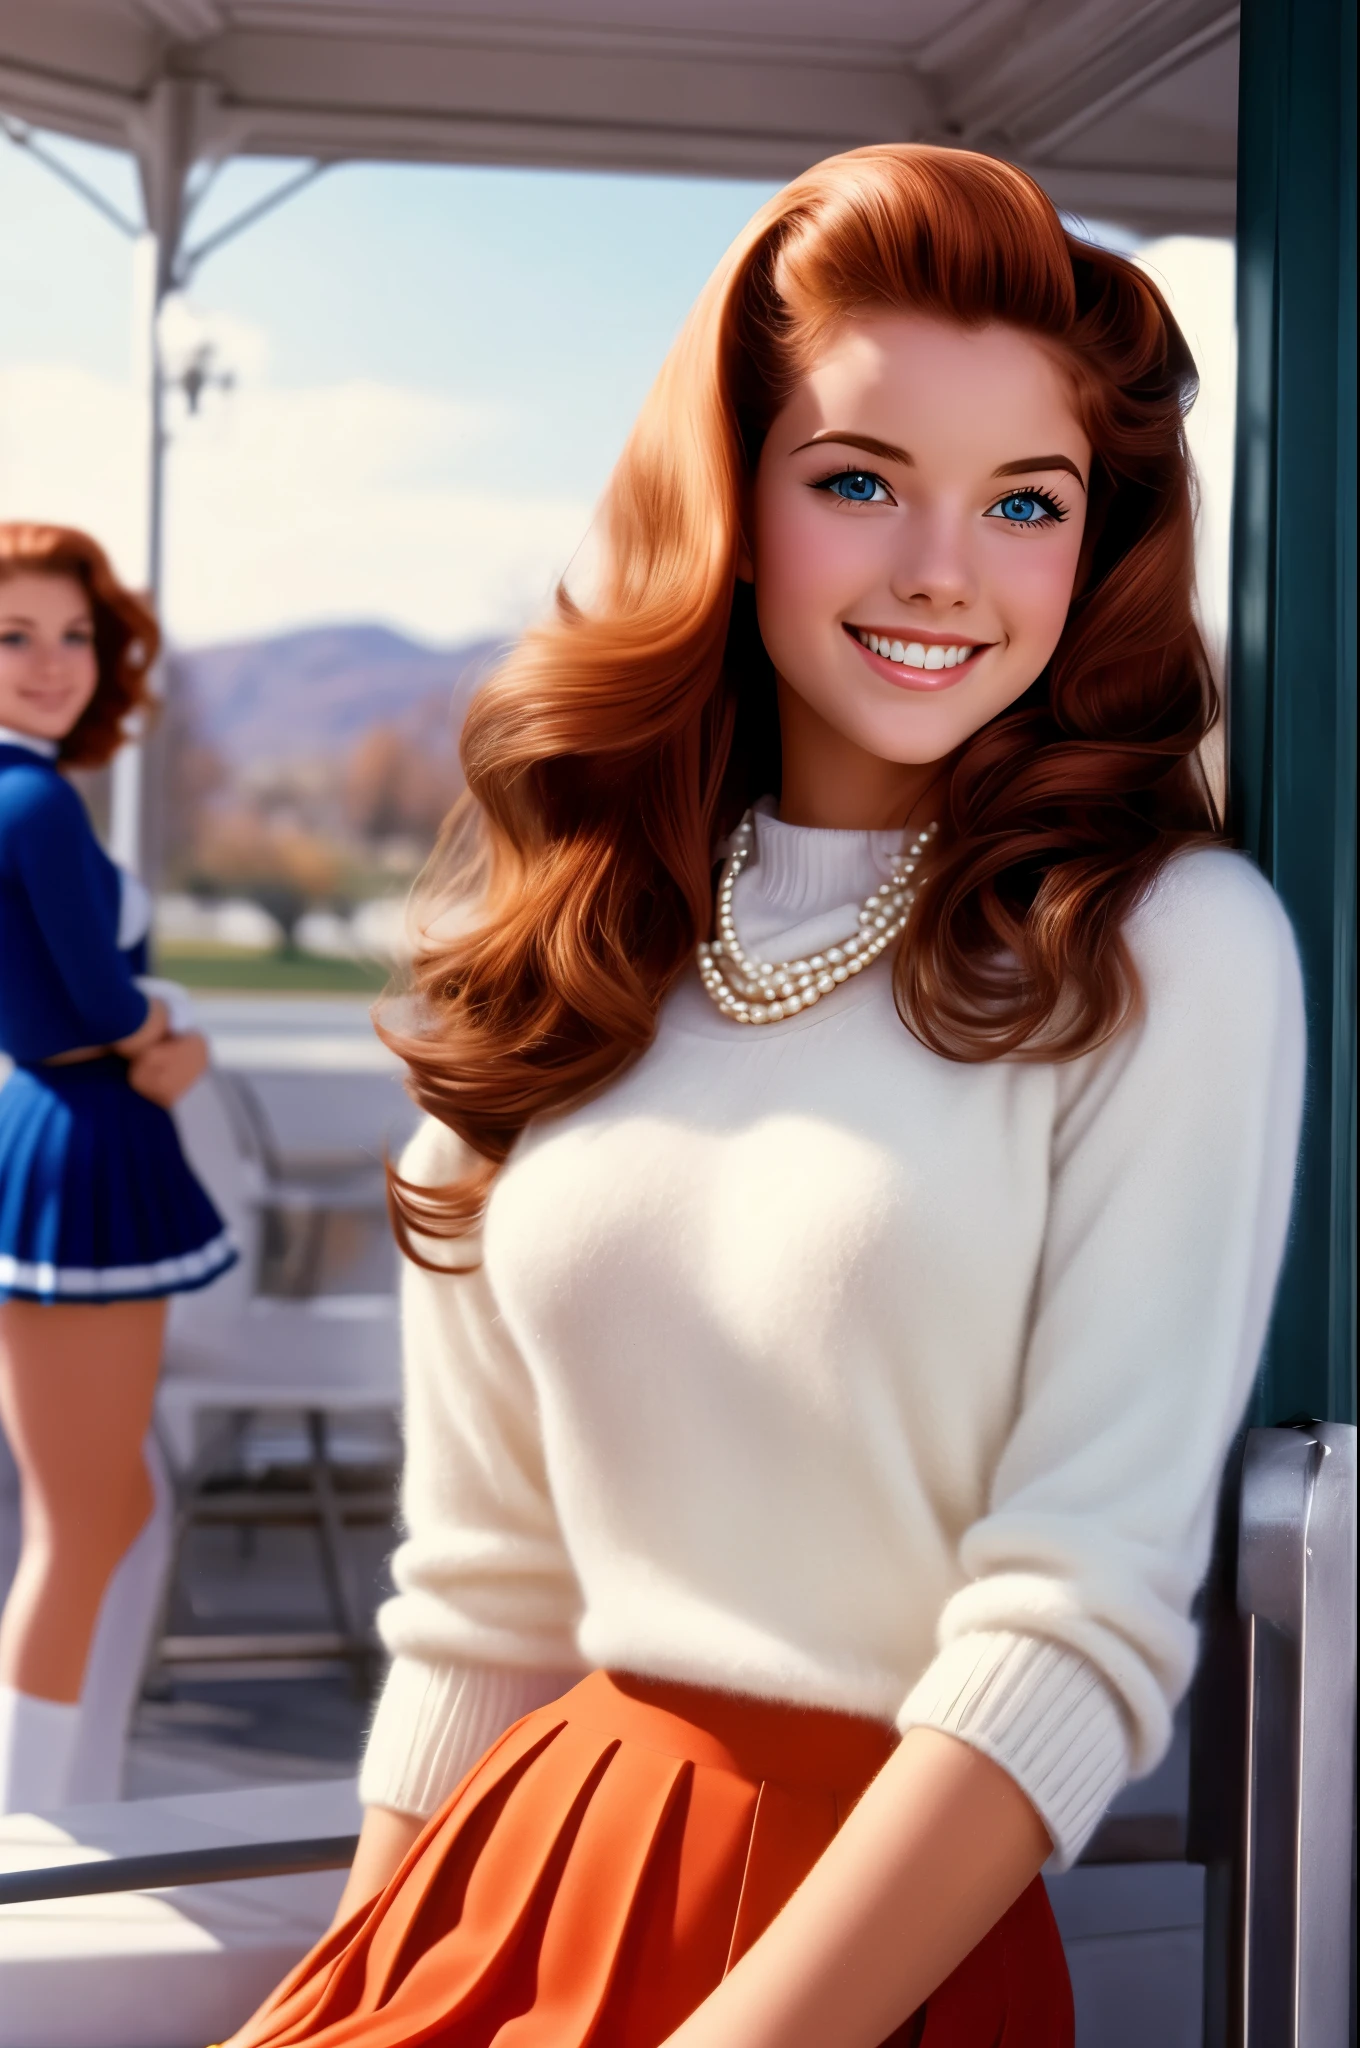  un lycéen de 21 ans,   avec une silhouette de pom-pom girl, cheveux longs auburn, yeux bleu vif, et un sourire radieux, portant un pull en cachemire et des perles